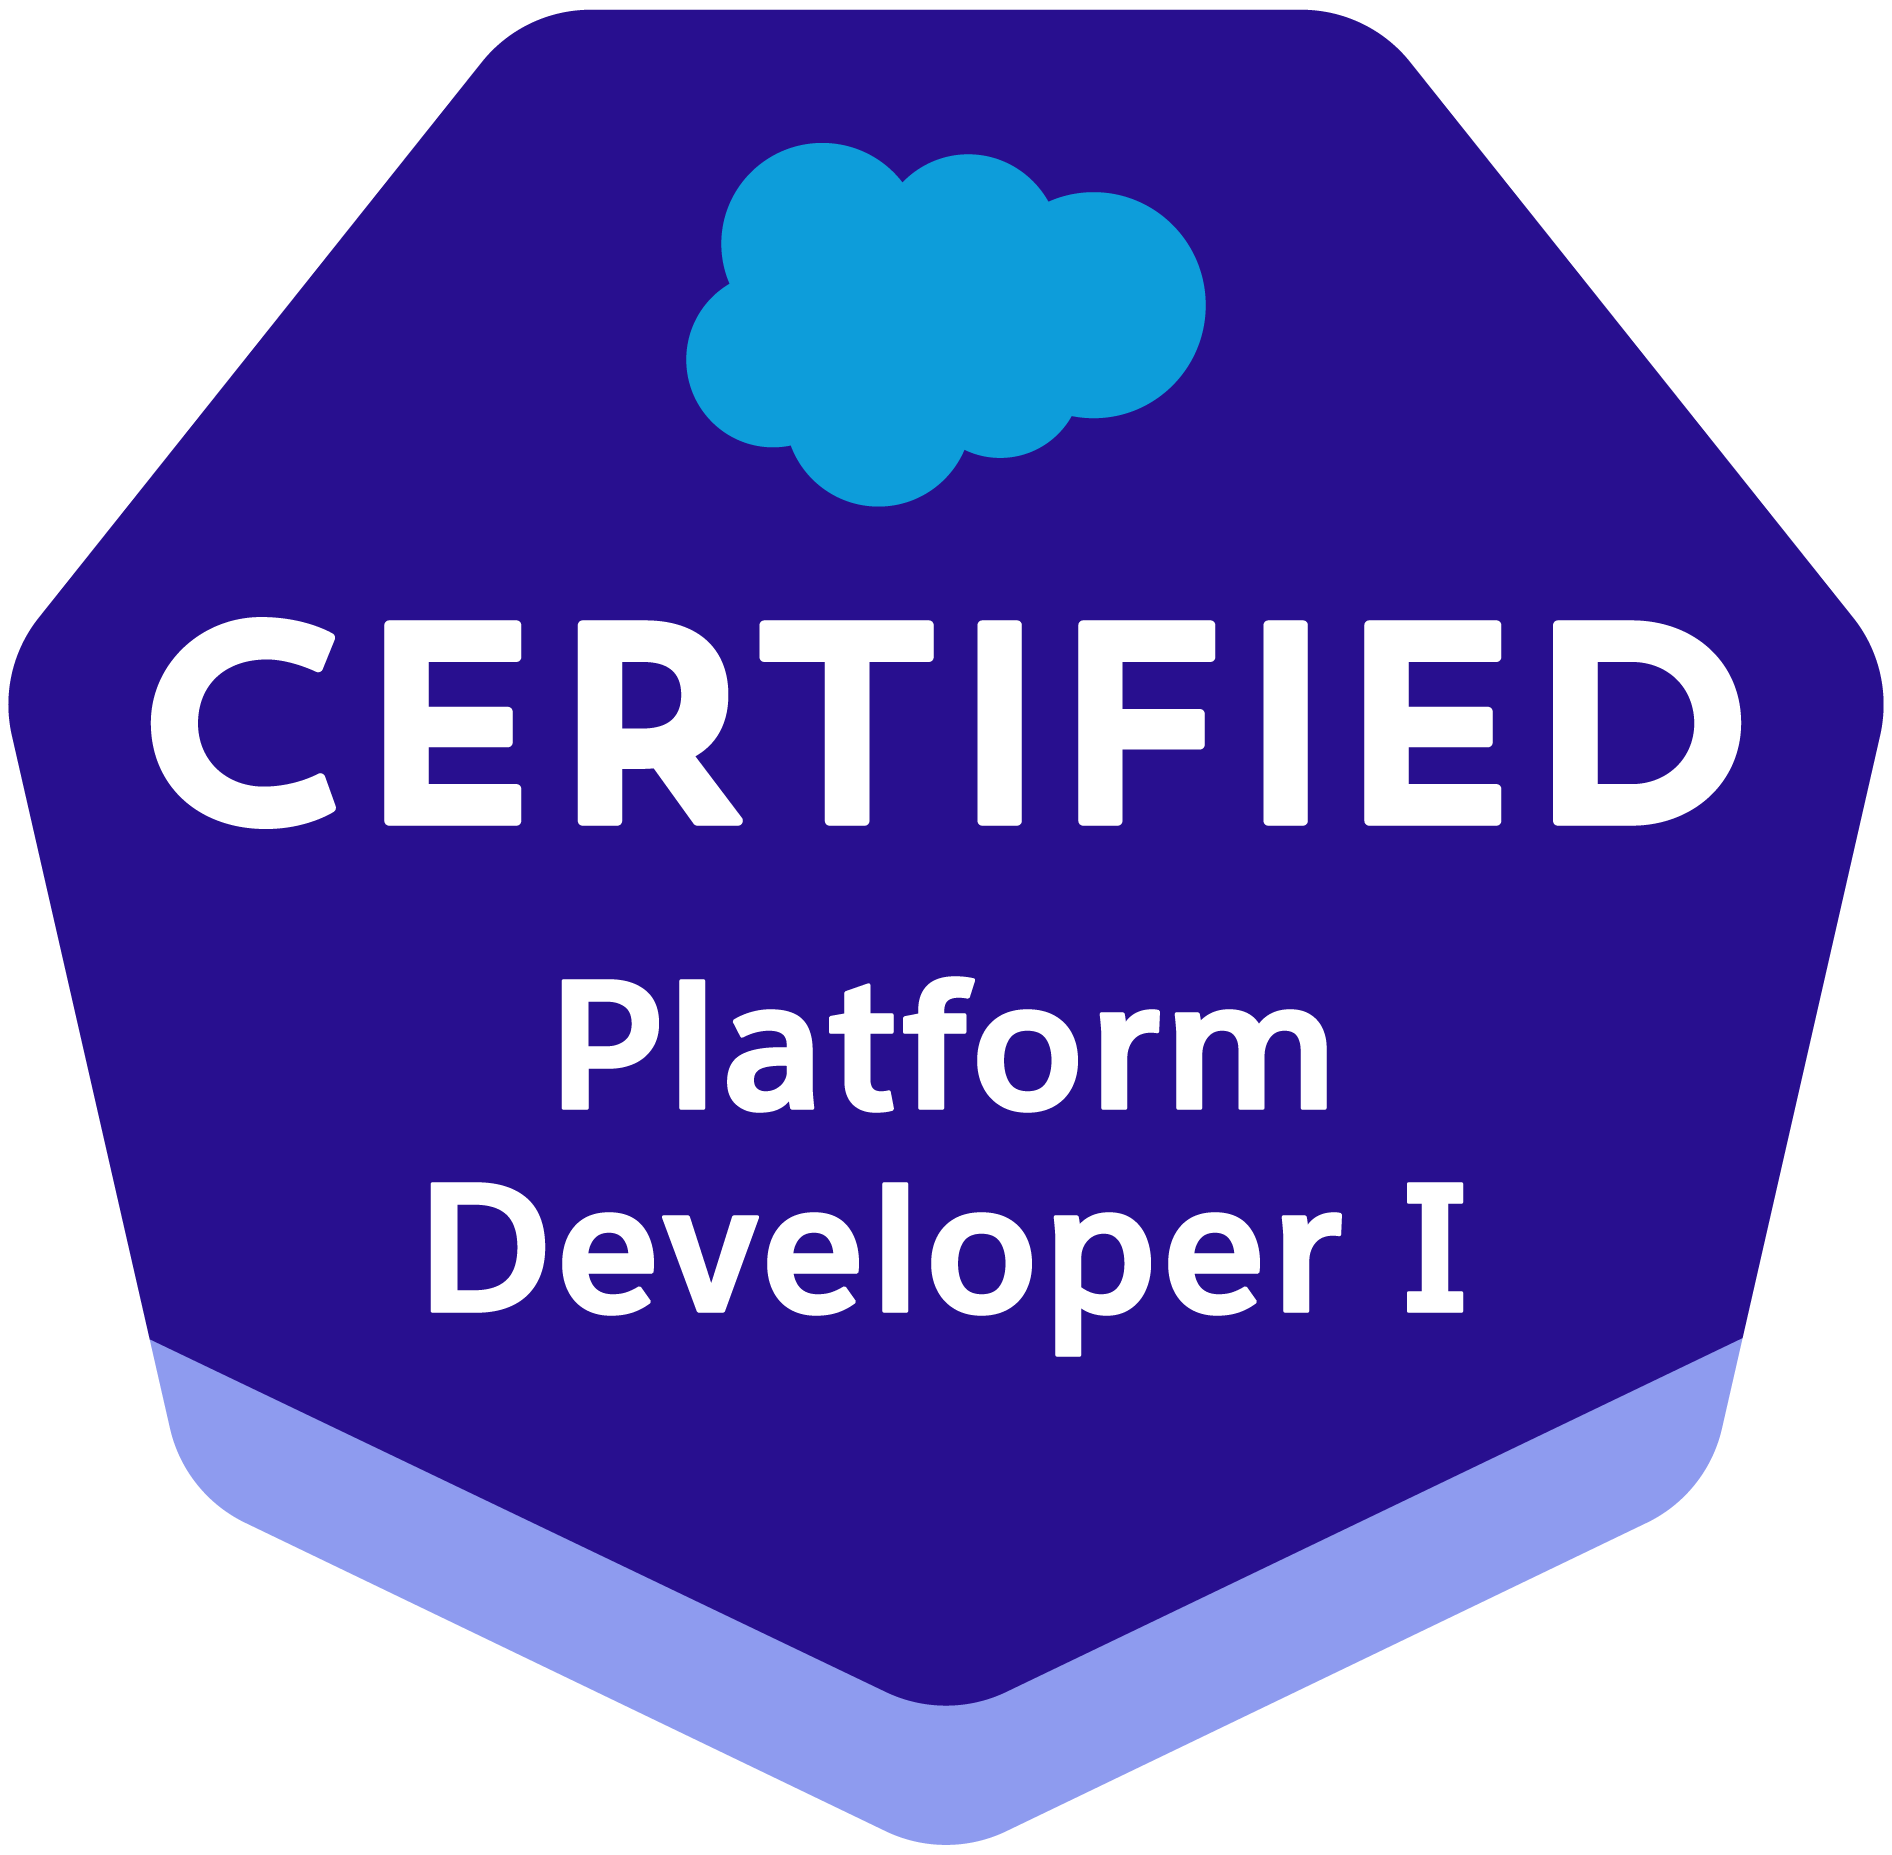 Platform Developer I certification